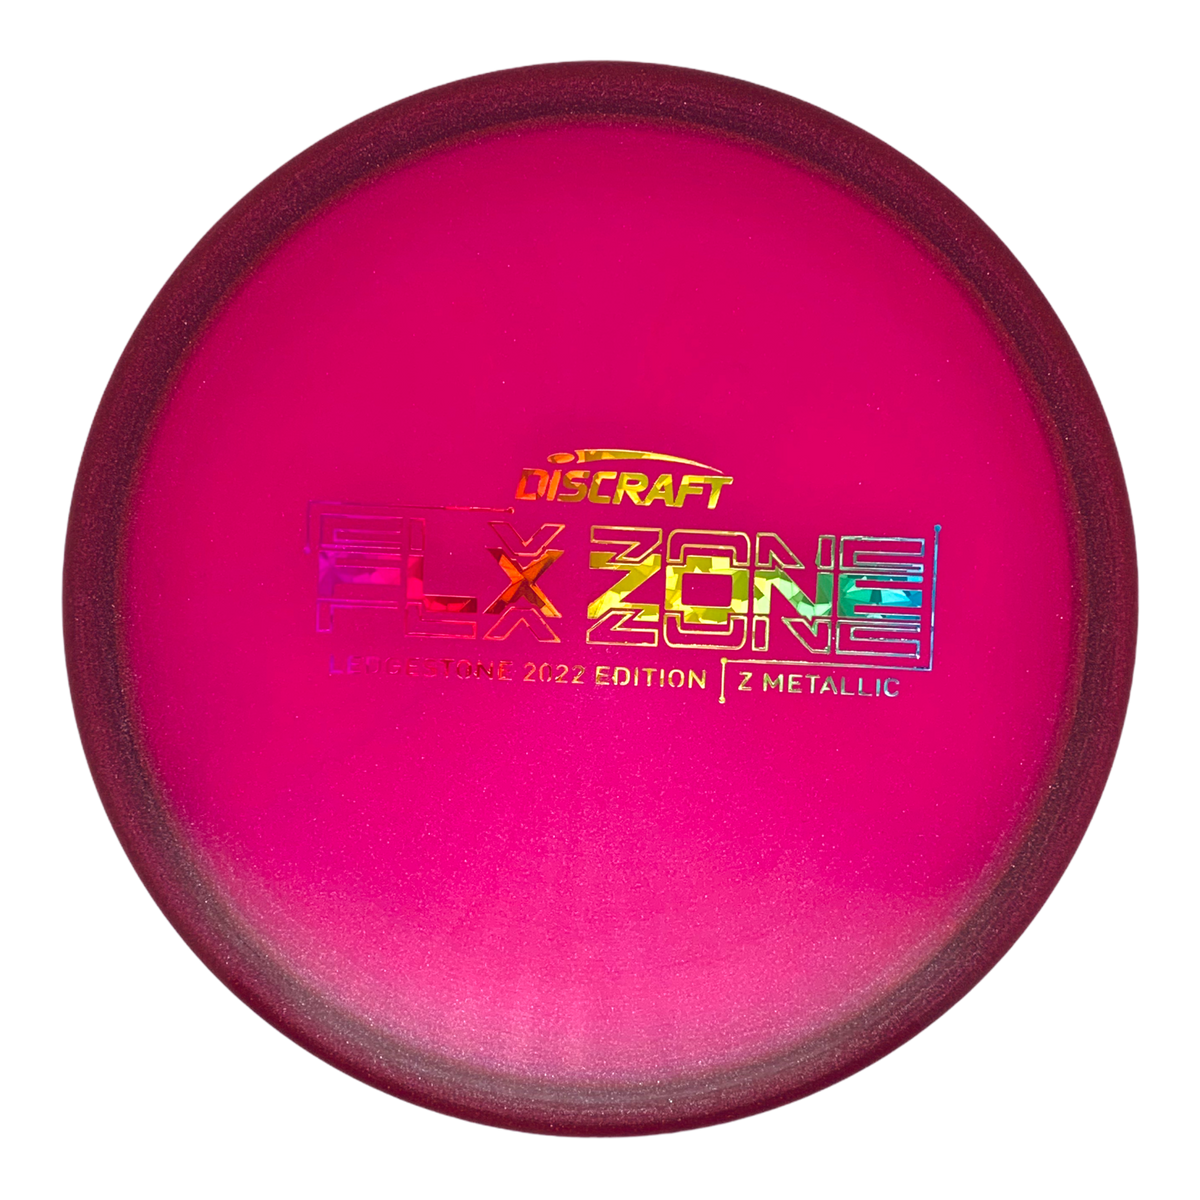 Discraft Z Metallic FLX Zone- Ledgestone Wave 4